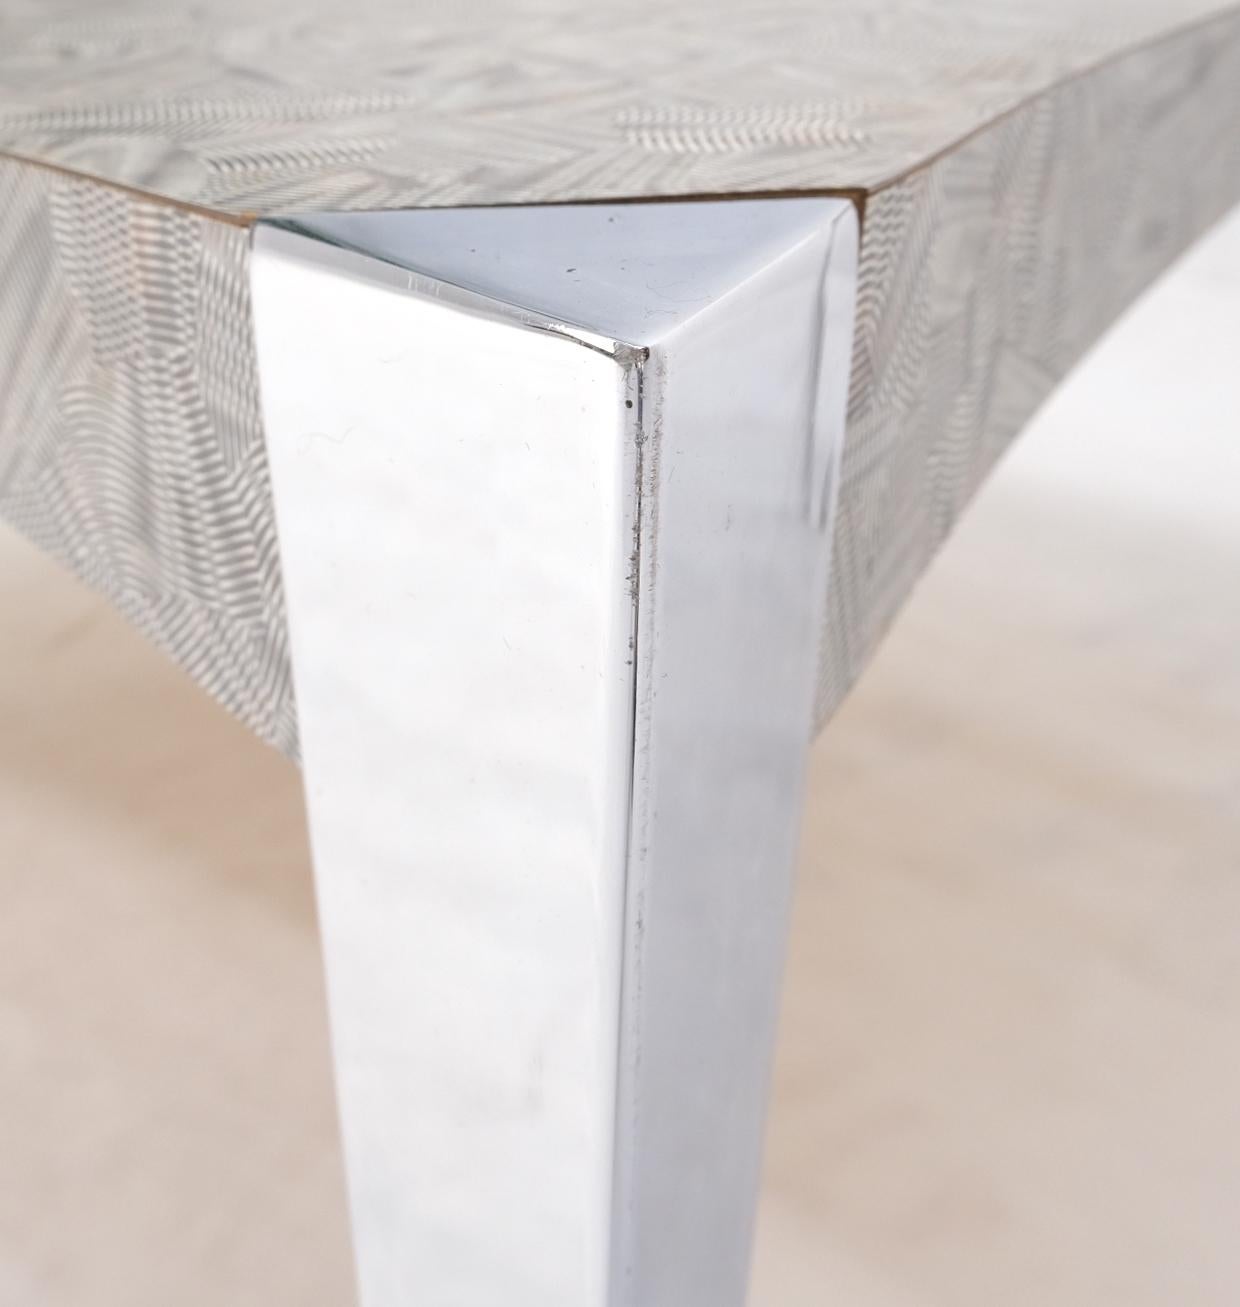 20ième siècle Manteau de table carré à côtés concaves et concaves, pieds triangulaires effilés en aluminium, table basse Scratch Coat en vente